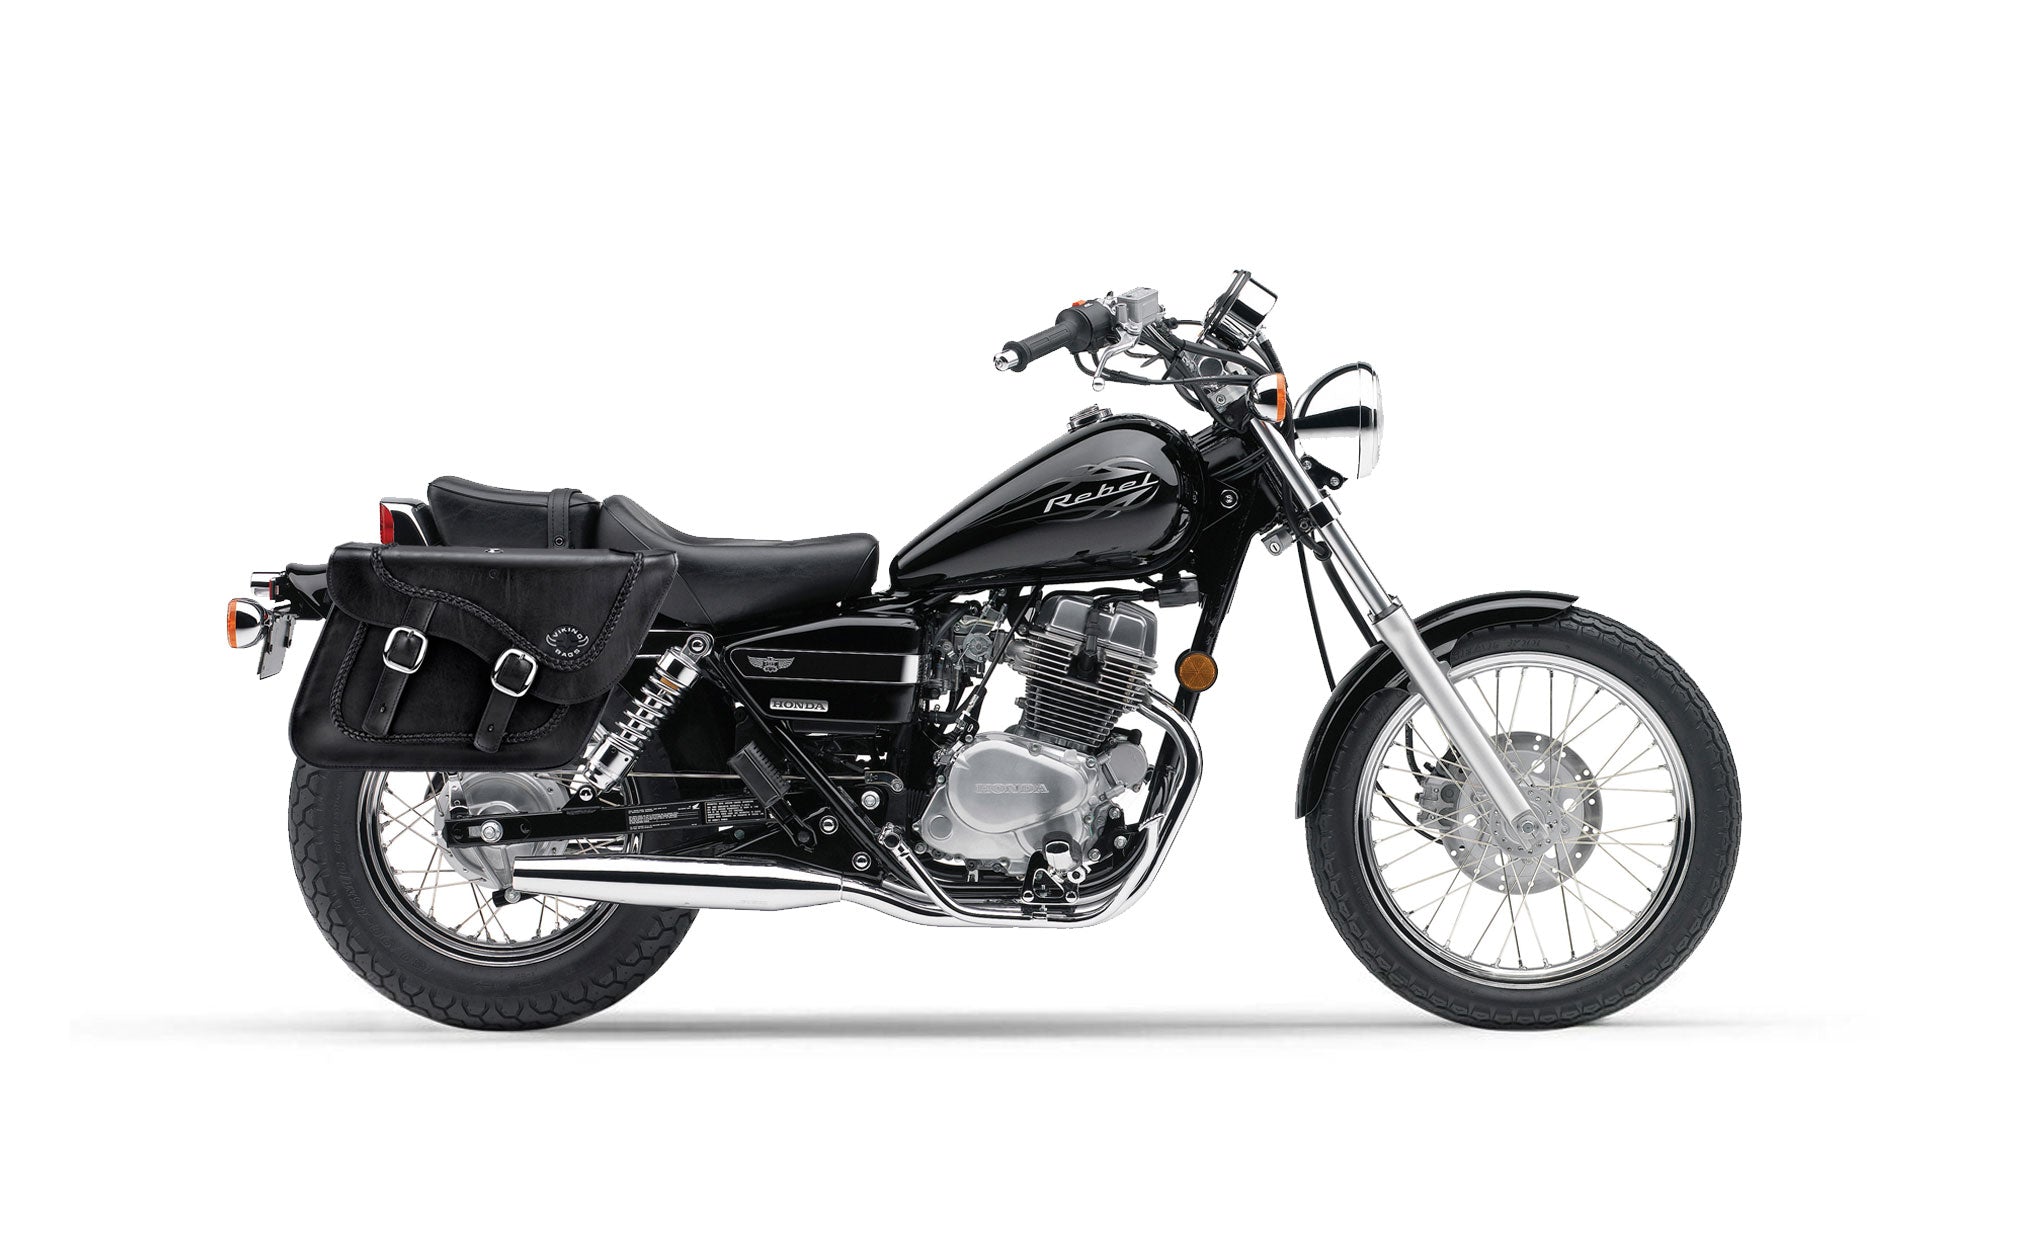 Viking Americano Honda Rebel 250 Cmx250C Braided Large Leather Motorcycle Saddlebags on Bike Photo @expand